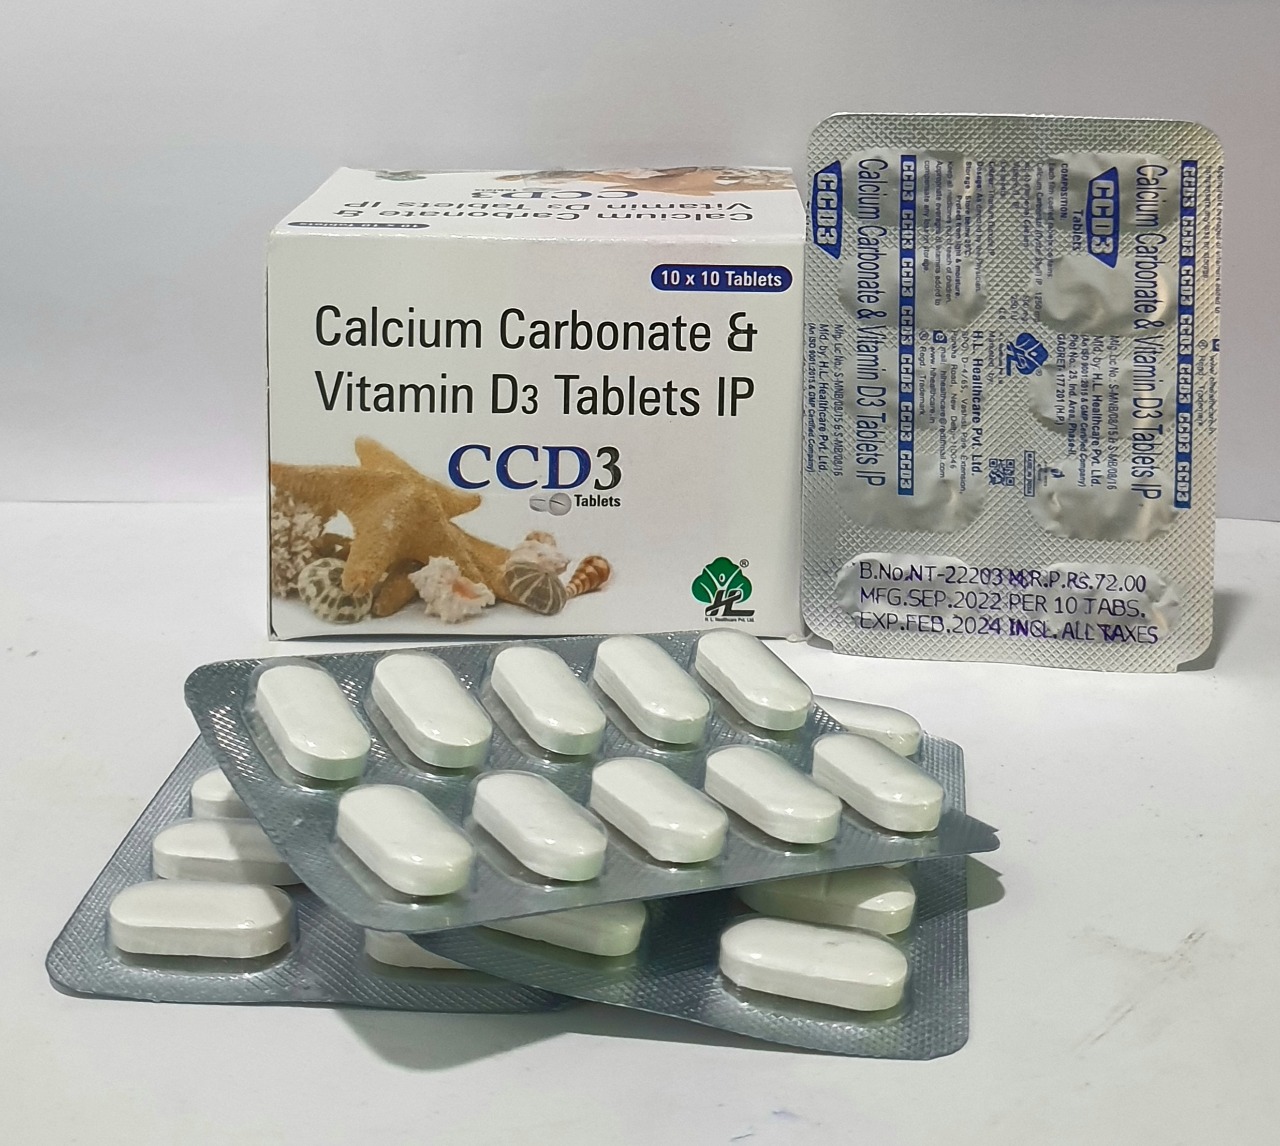 calcium carbonate 500mg +vitamine d3
250 i.u.